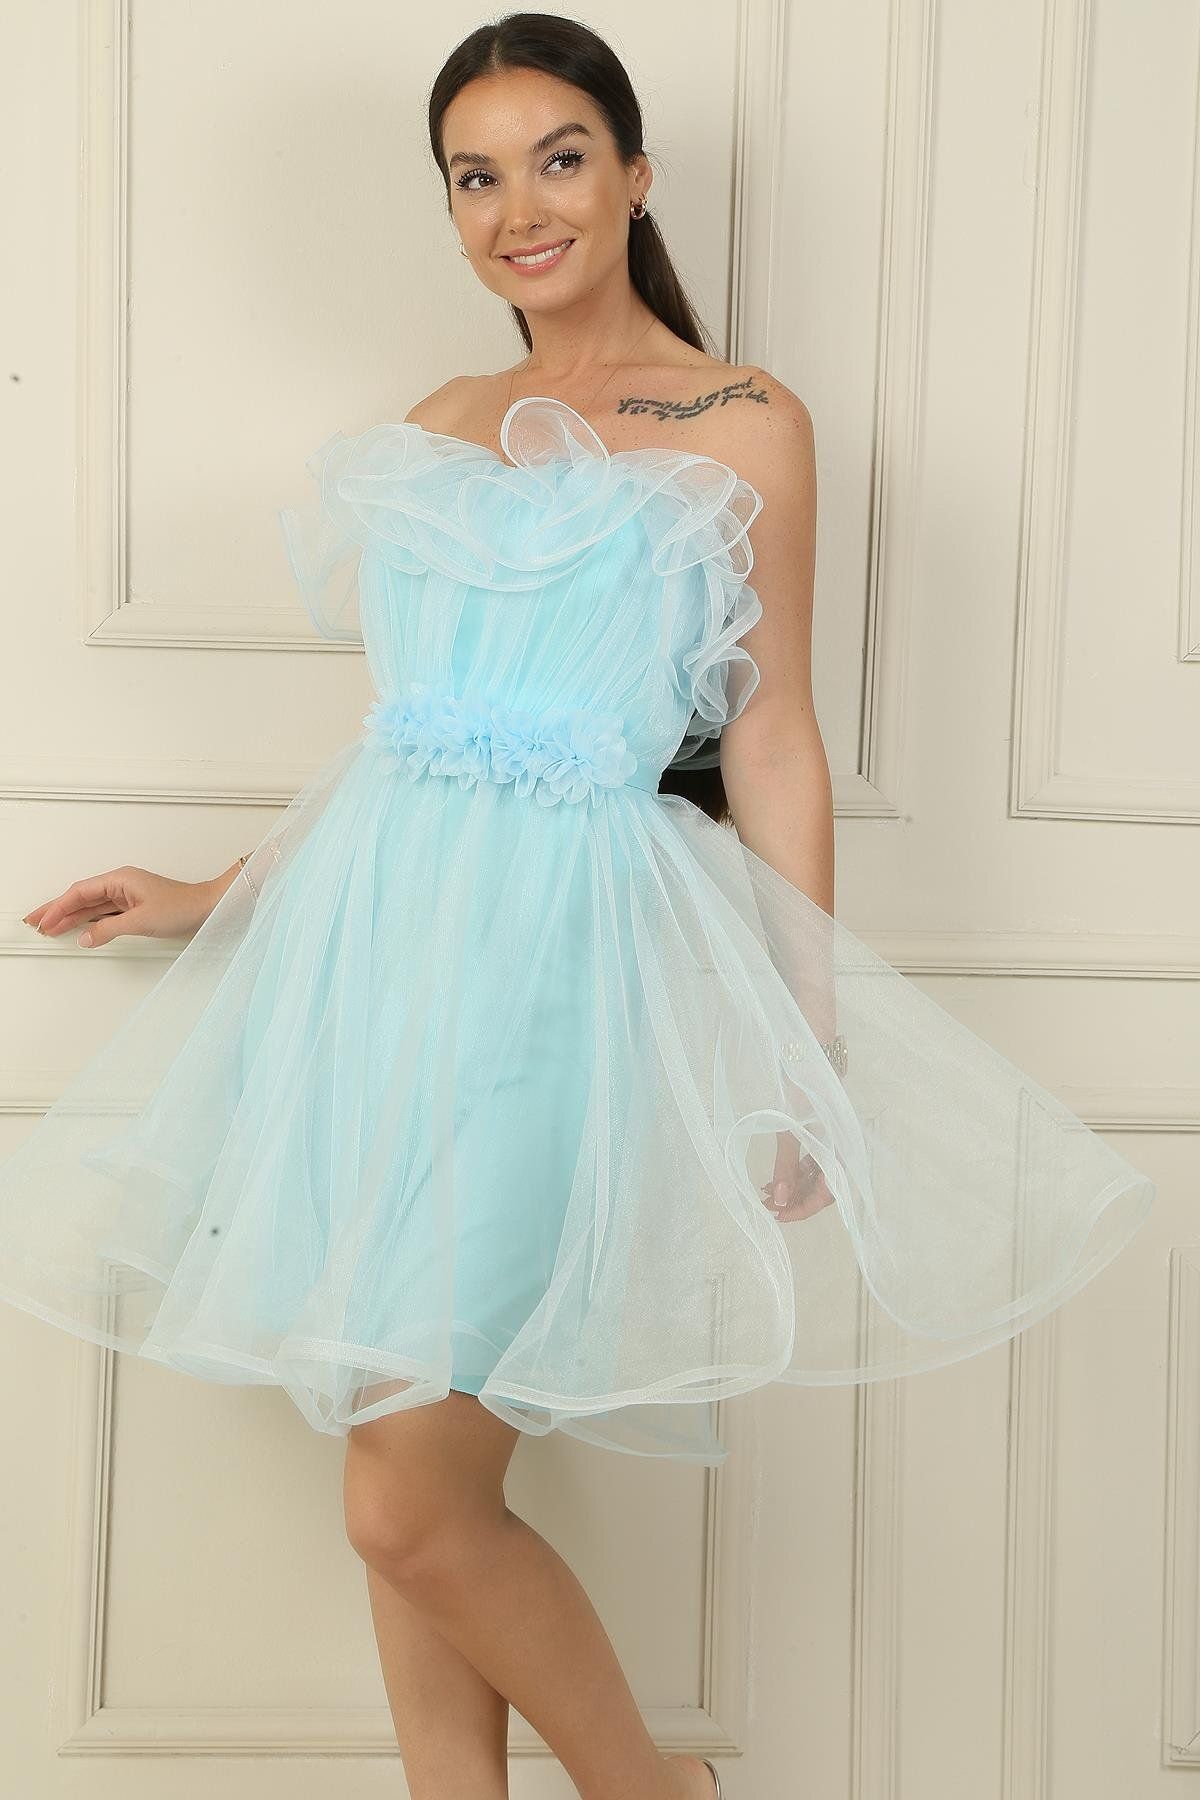 By Saygı Straplez Farbalı Beli Çiçekli Astarlı Kısa Prenses Tül Elbise